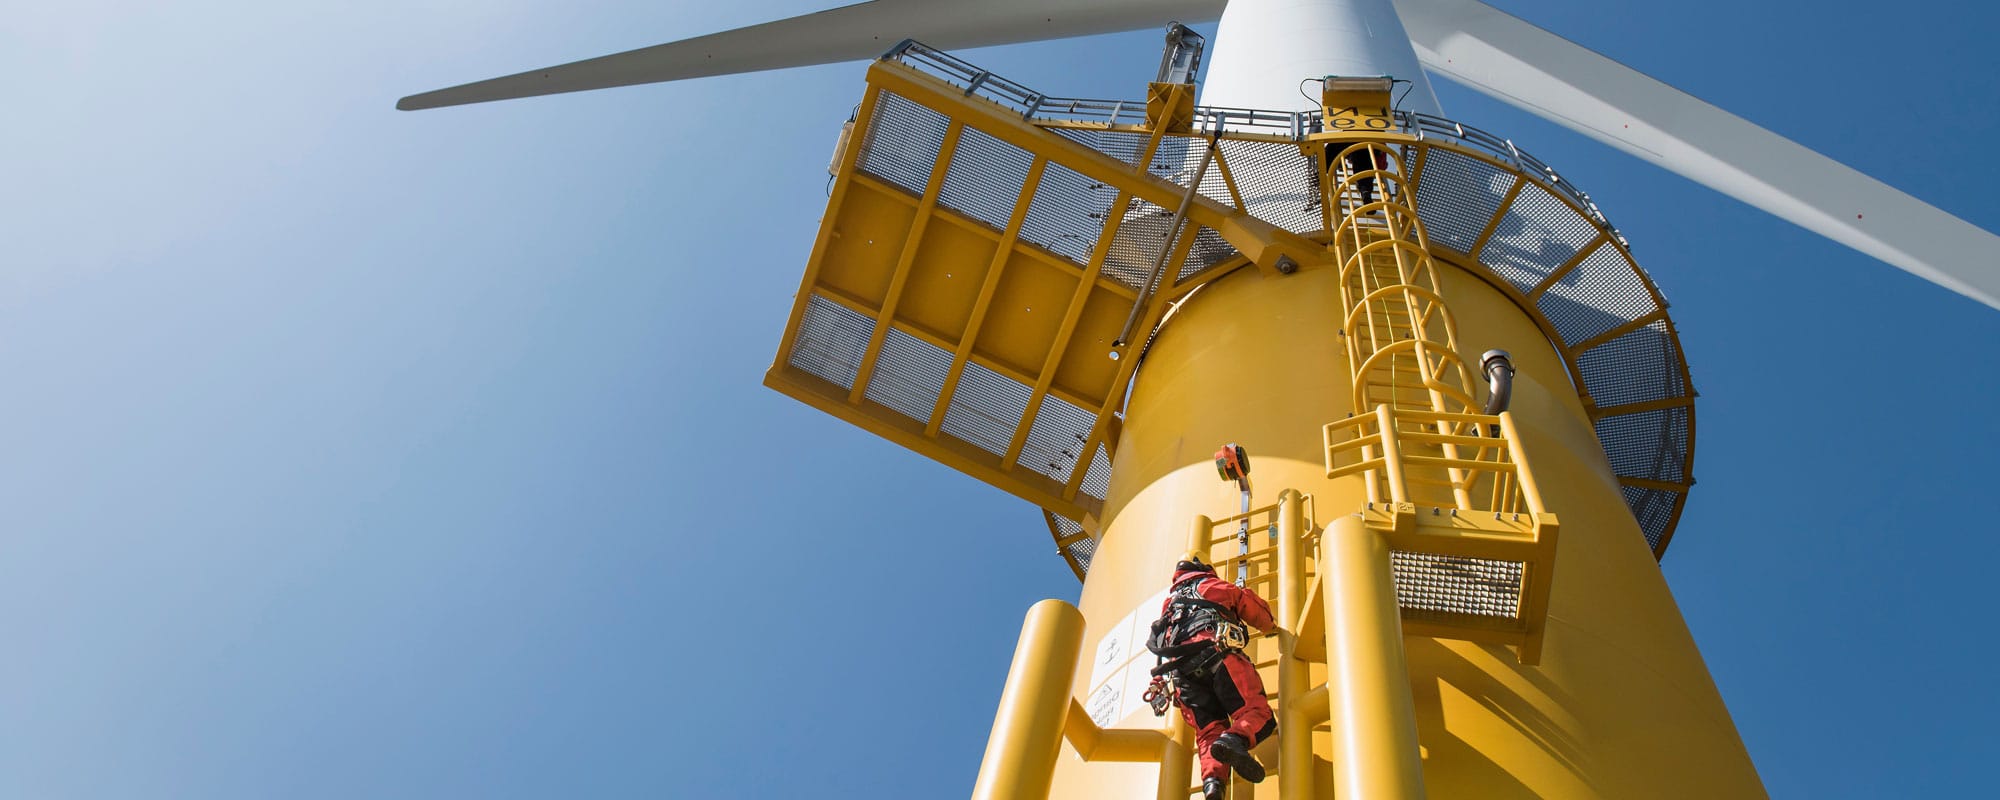 Wind Techs desempenham um papel crítico para manter a energia ligada